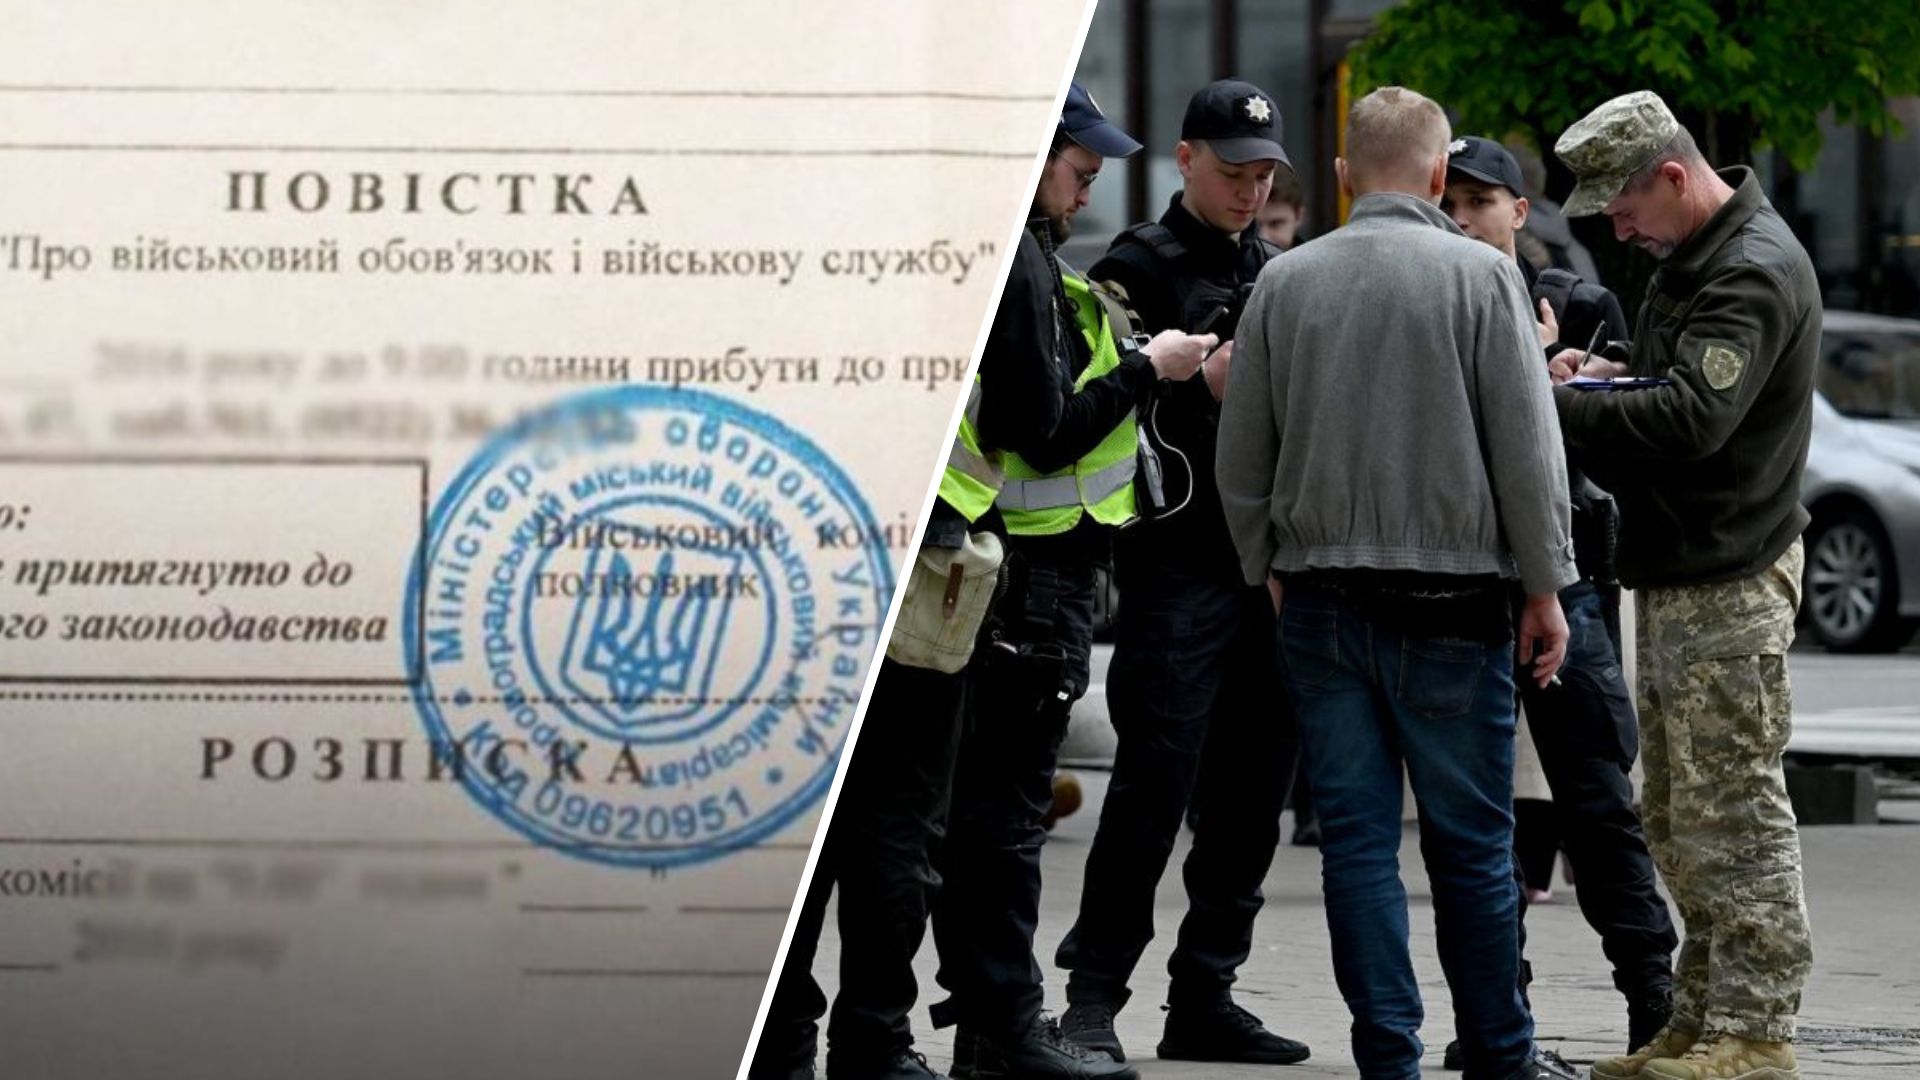 Мобілізація в Україні військовозобов'язаних від 18 до 60 років триває. Закон про мобілізацію, який був підписаний президентом 16 квітня і передбачає низку змін, набуде законної сили лише 18 травня.